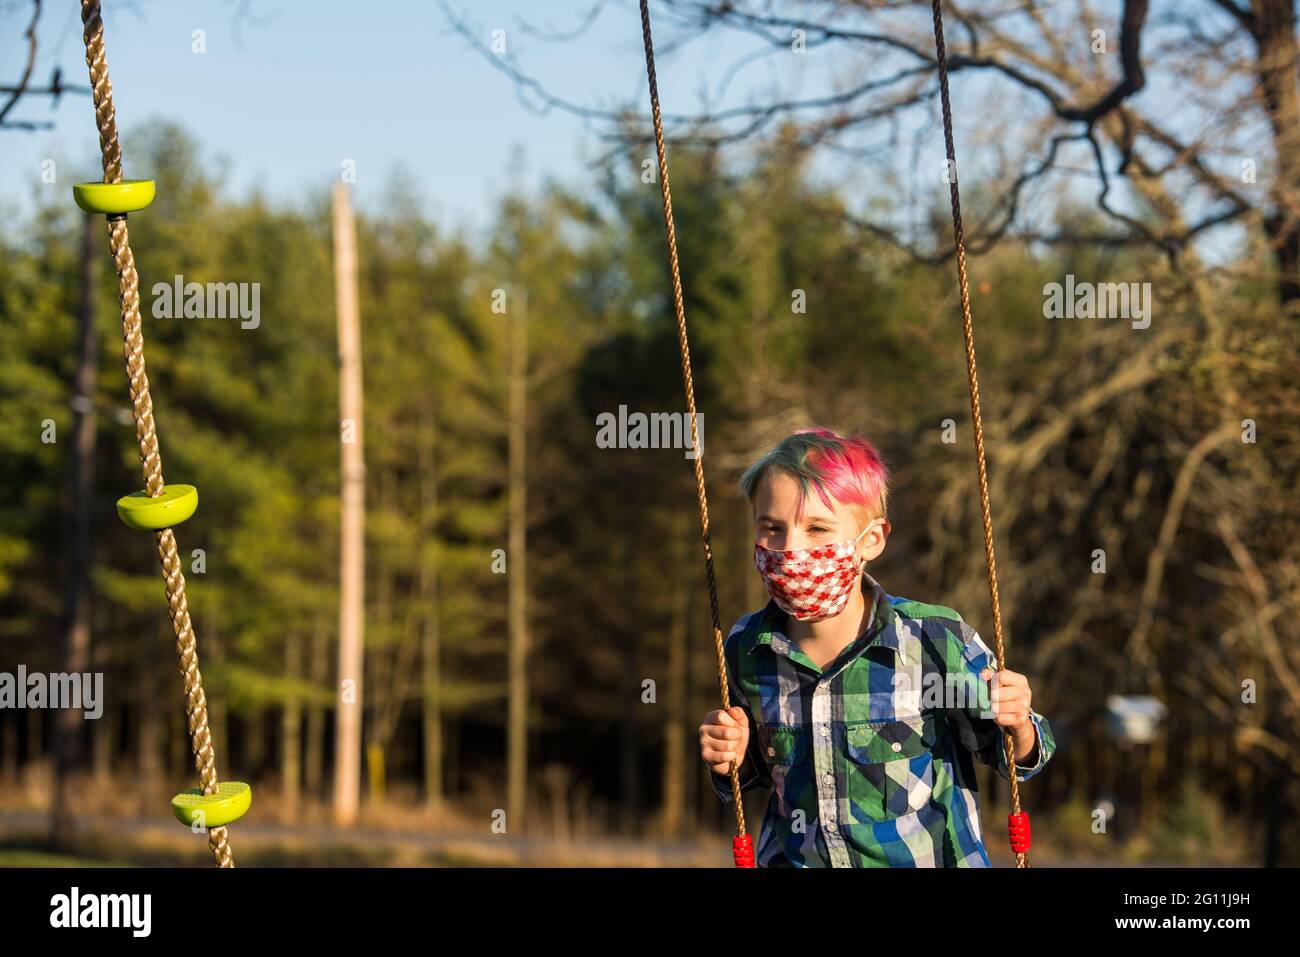 Kanada, Ontario, Junge in Gesichtsmaske auf Schaukel Stockfoto